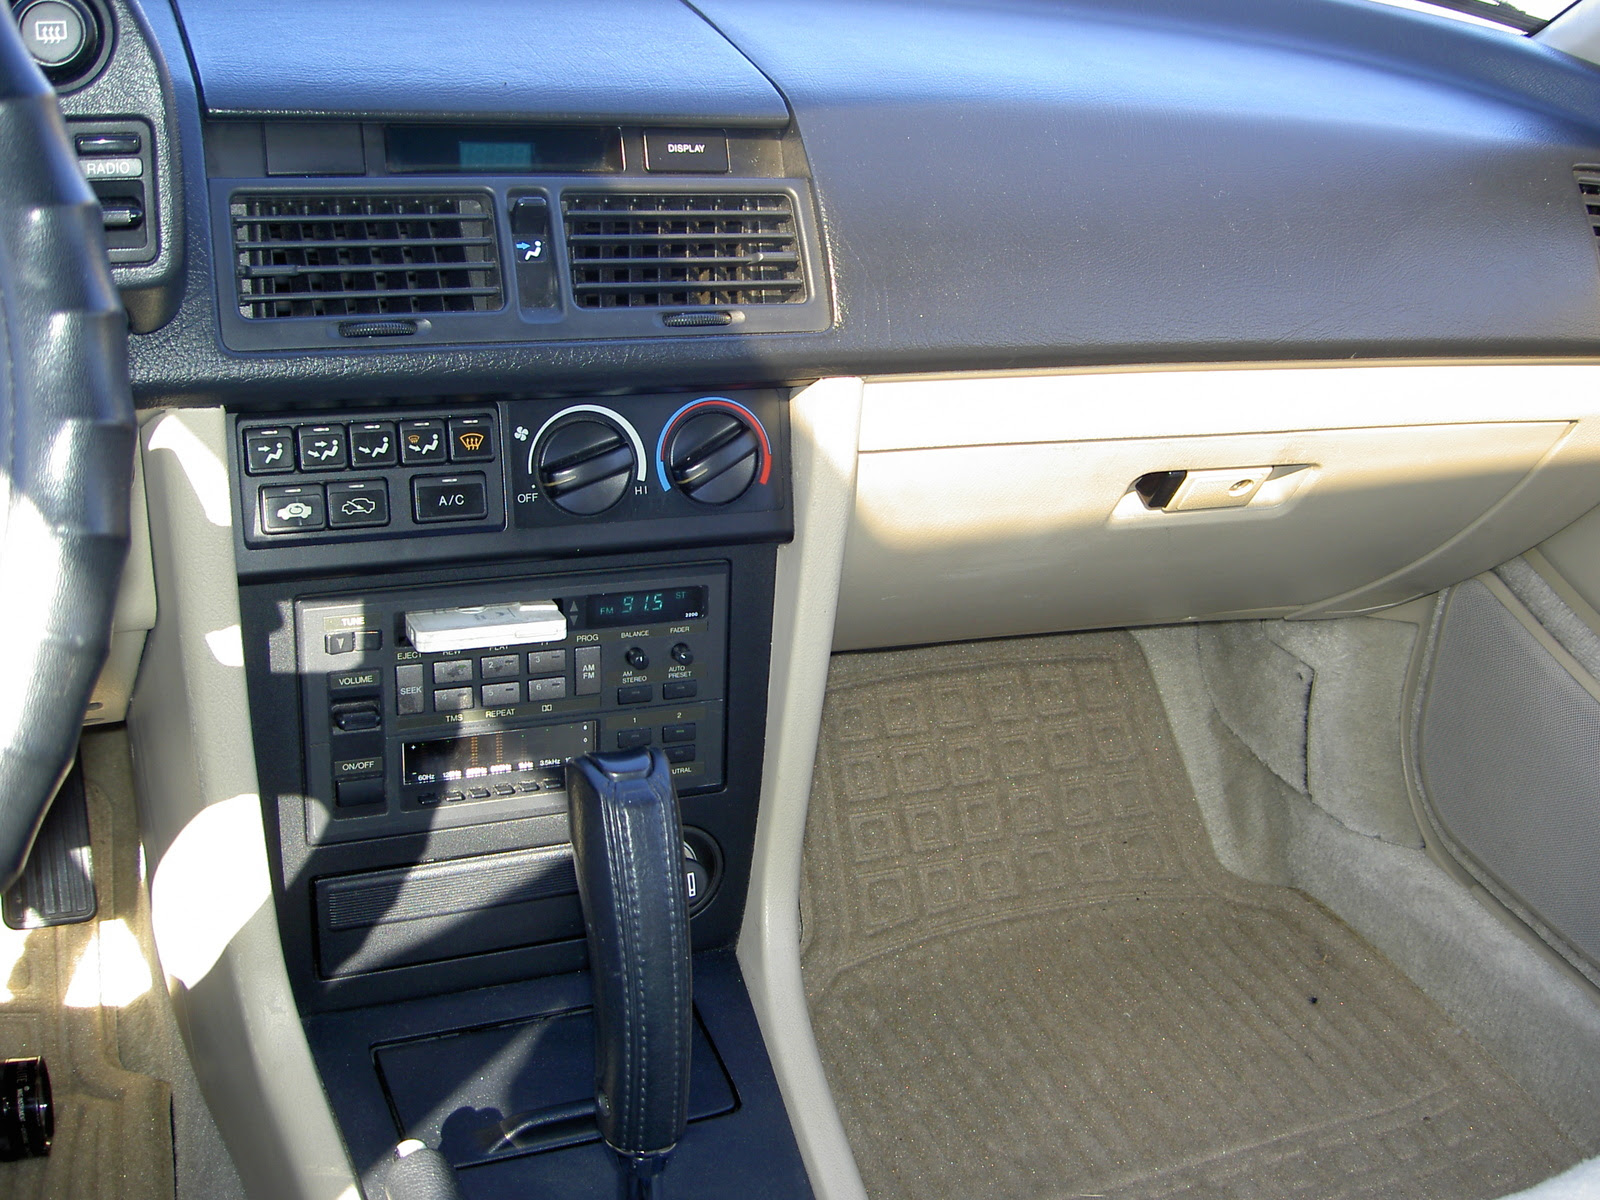 1990 Acura Legend Interior